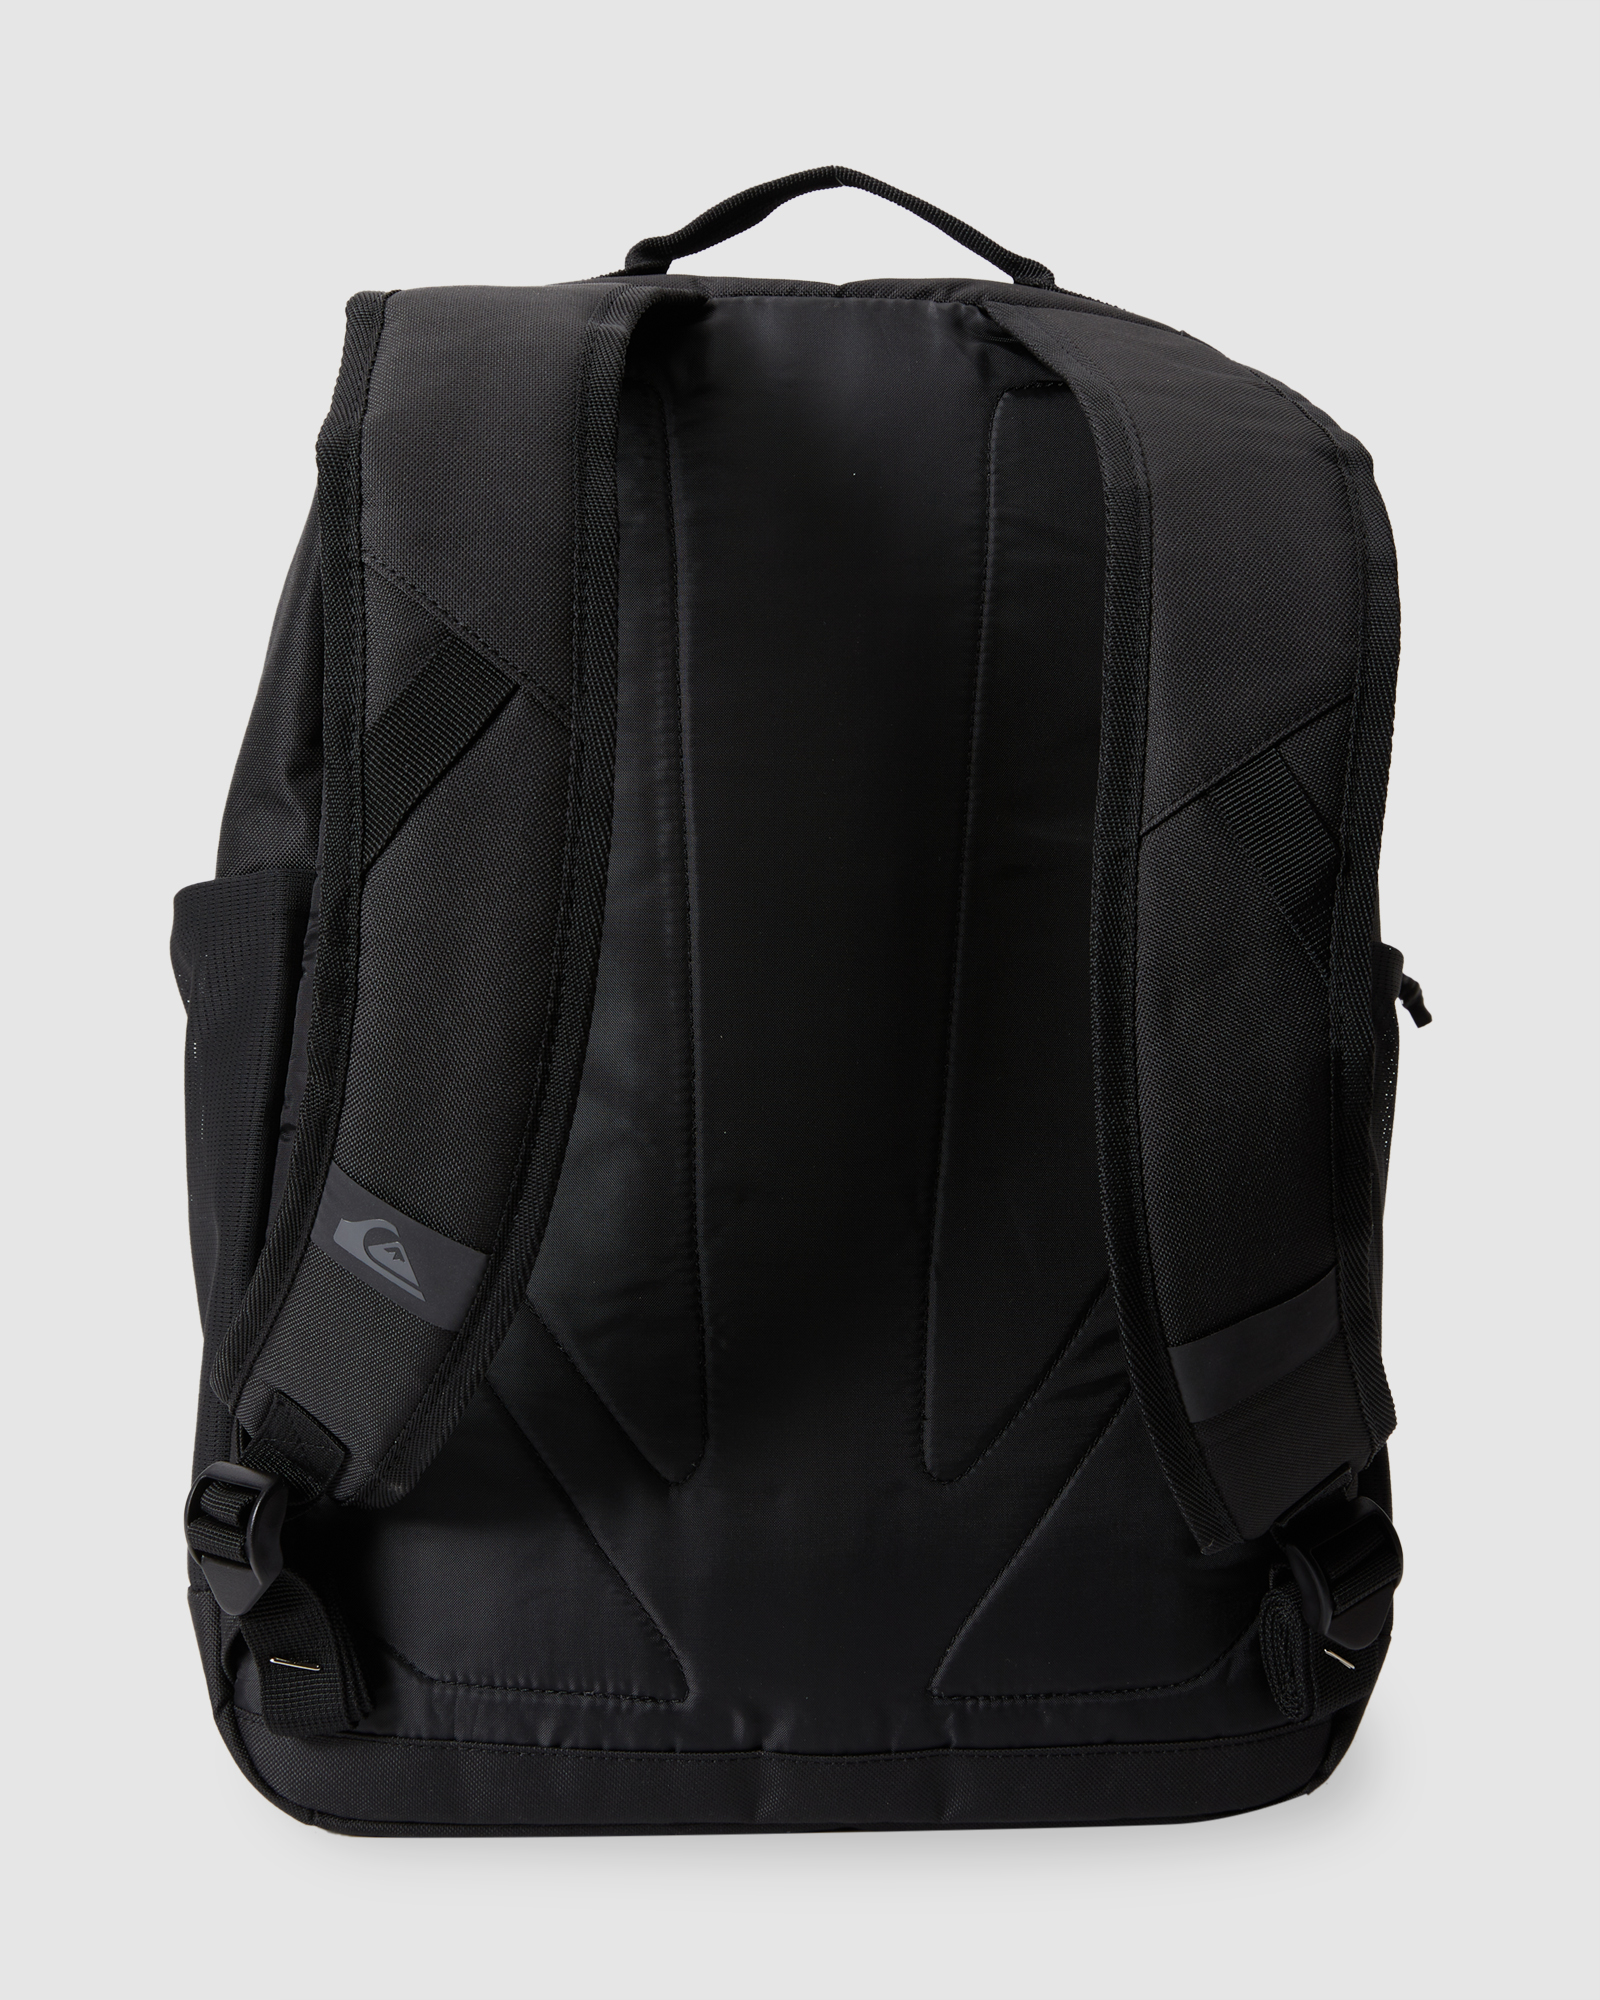 Quiksilver Schoolie Cooler 30L - Backpack - Gradiant Radical | SurfStitch